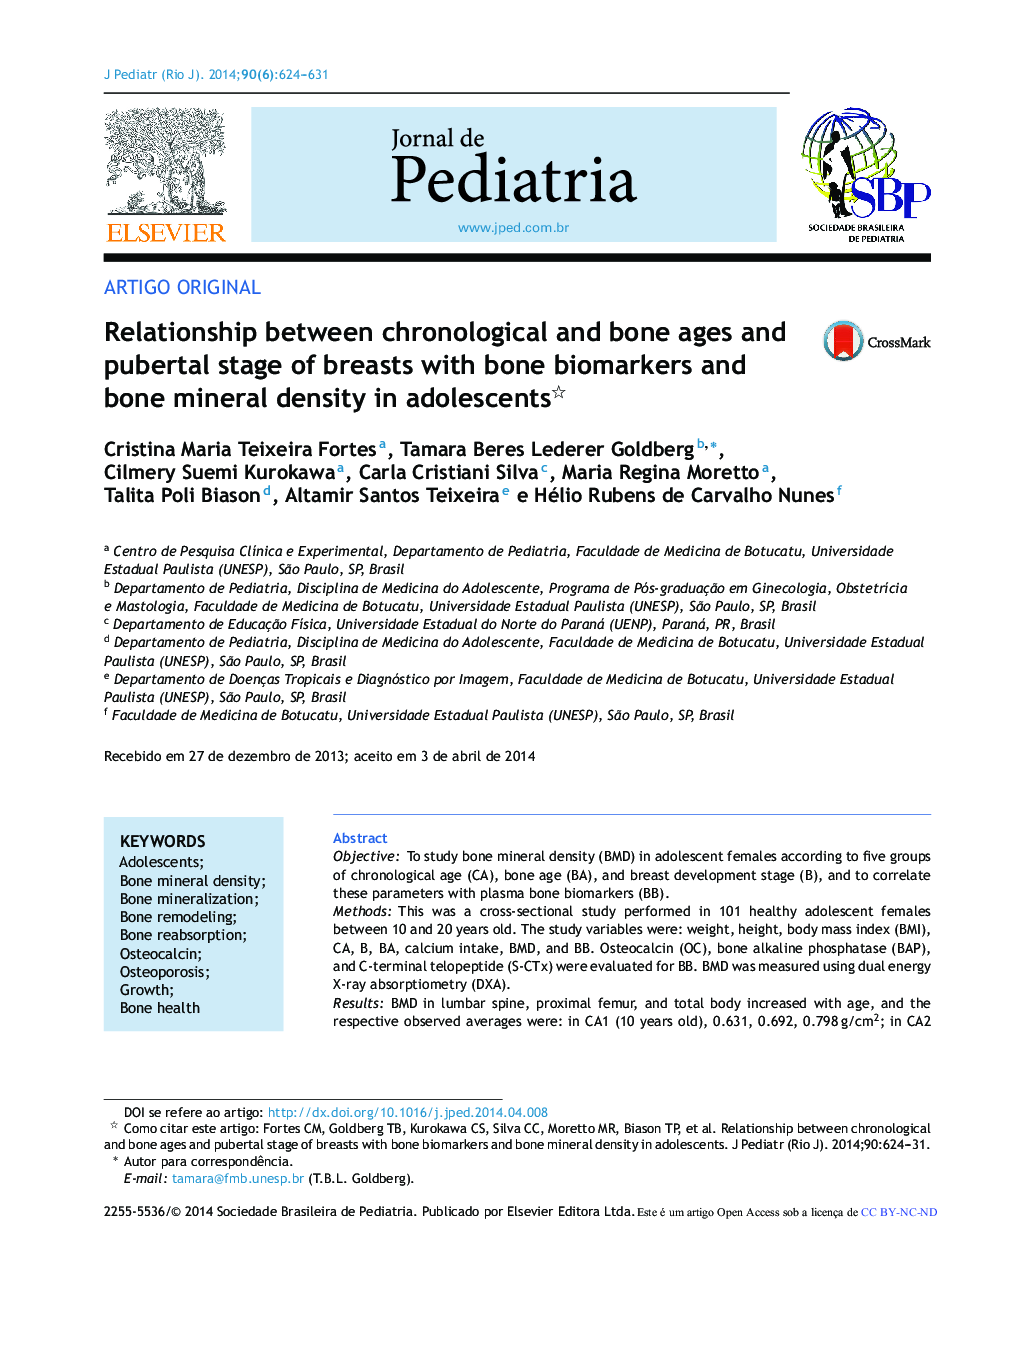 رابطه سن و زمان استخوانی و مرحله بلوند سینه با بیومارکرهای استخوان و تراکم استخوان در نوجوانان 